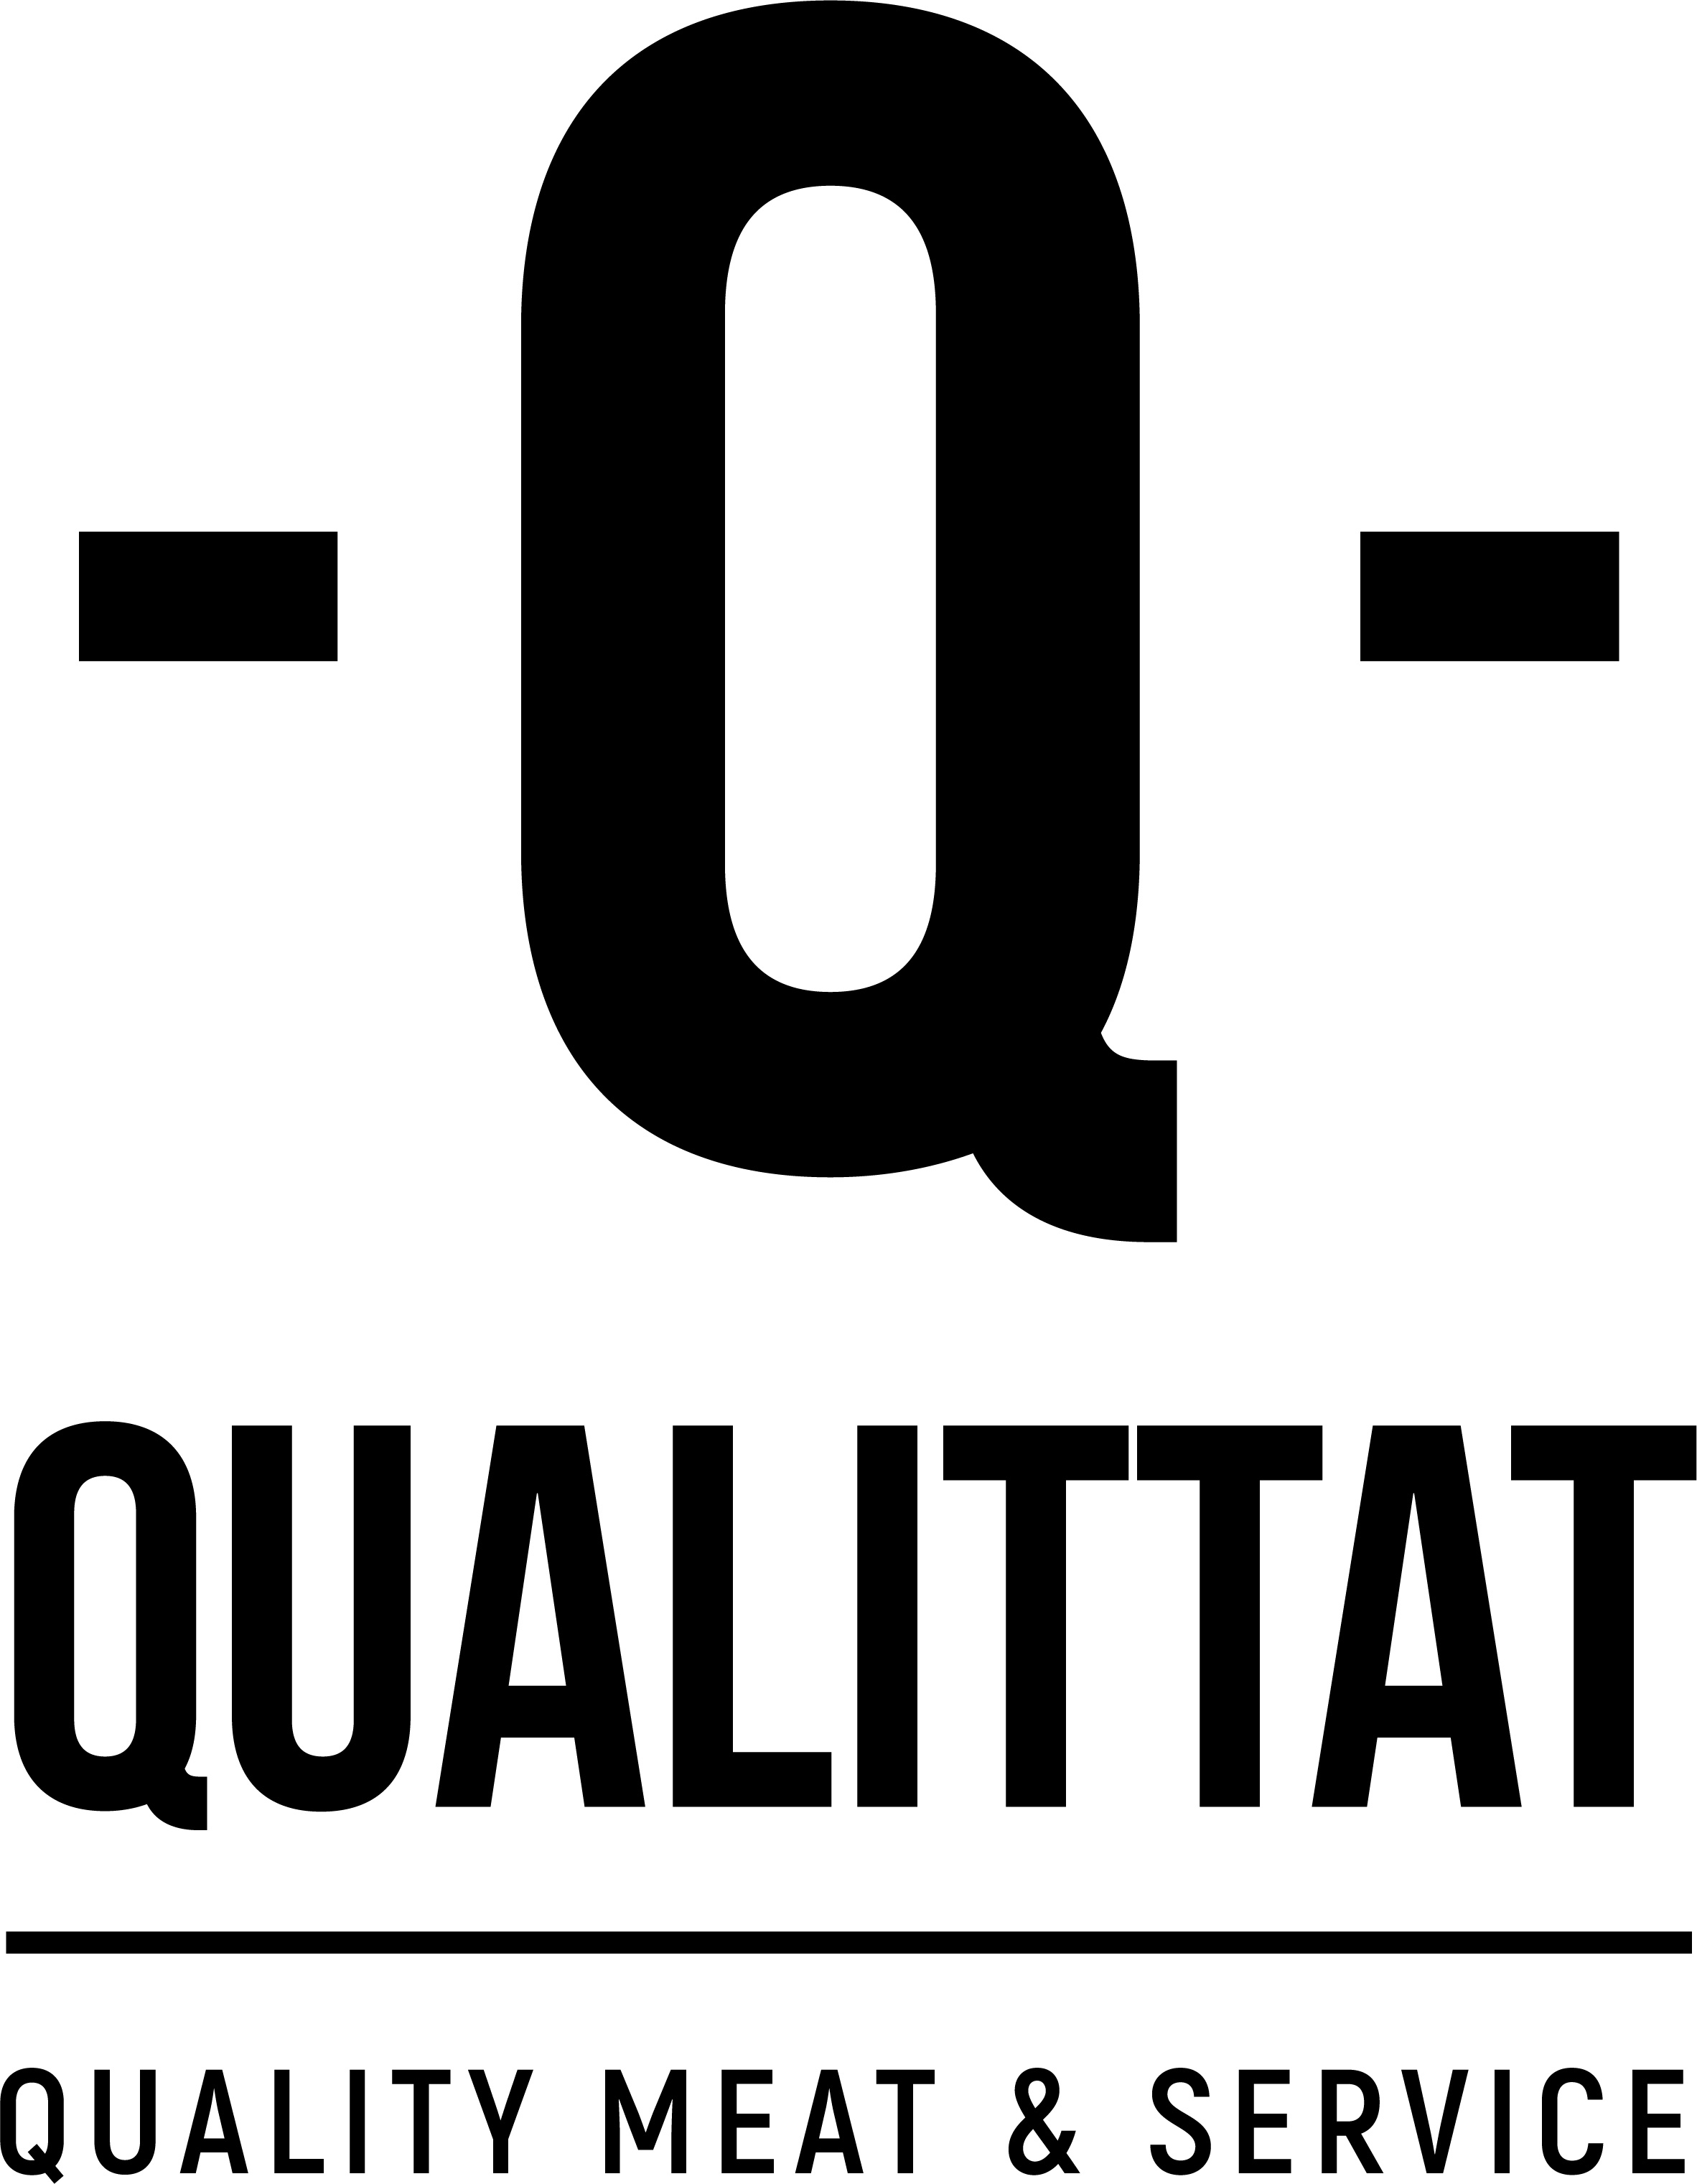 (c) Qualittat.com